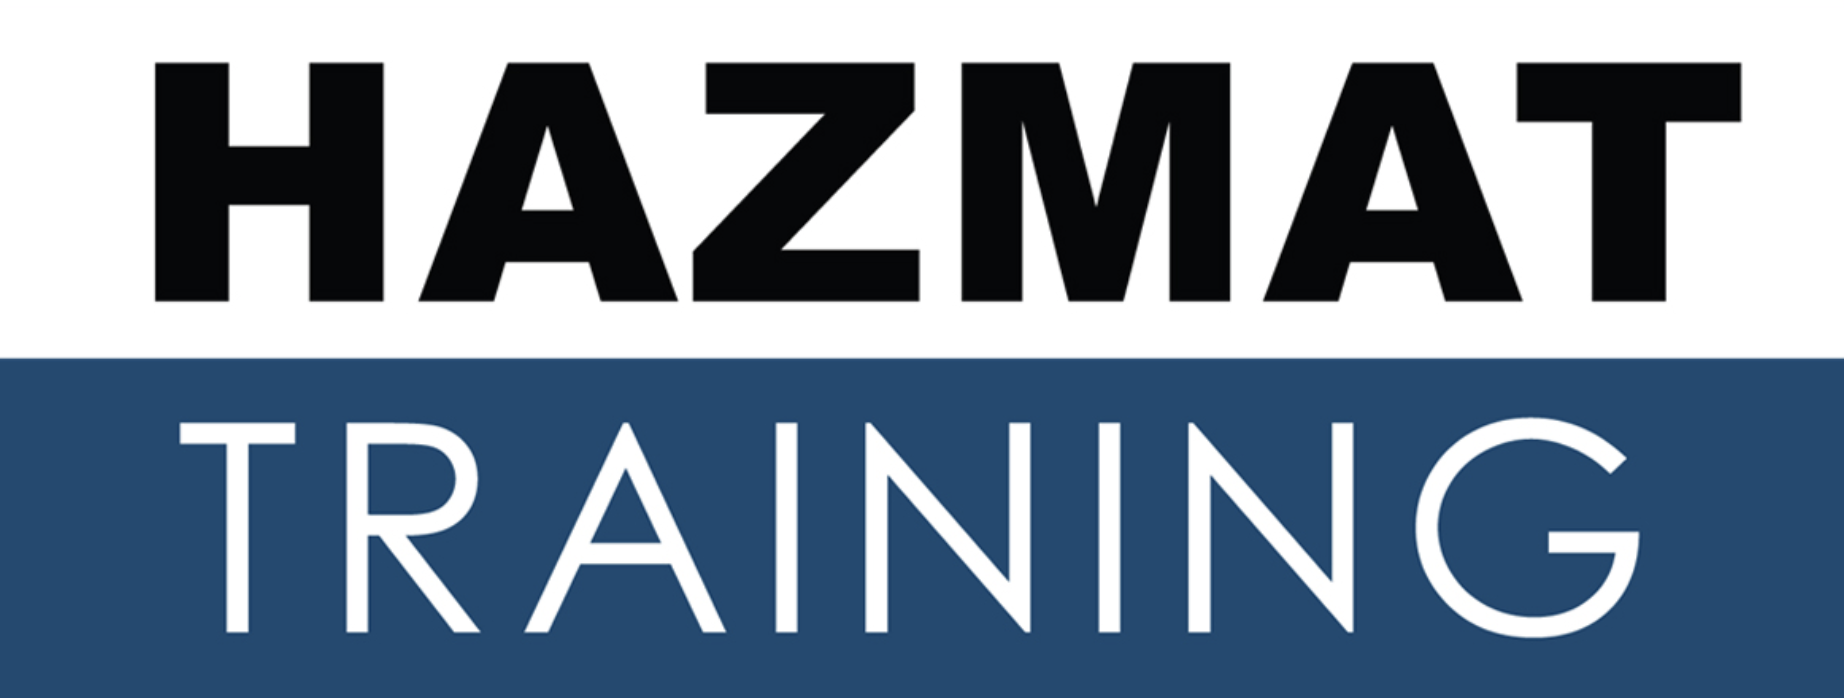 Hazmat Training image